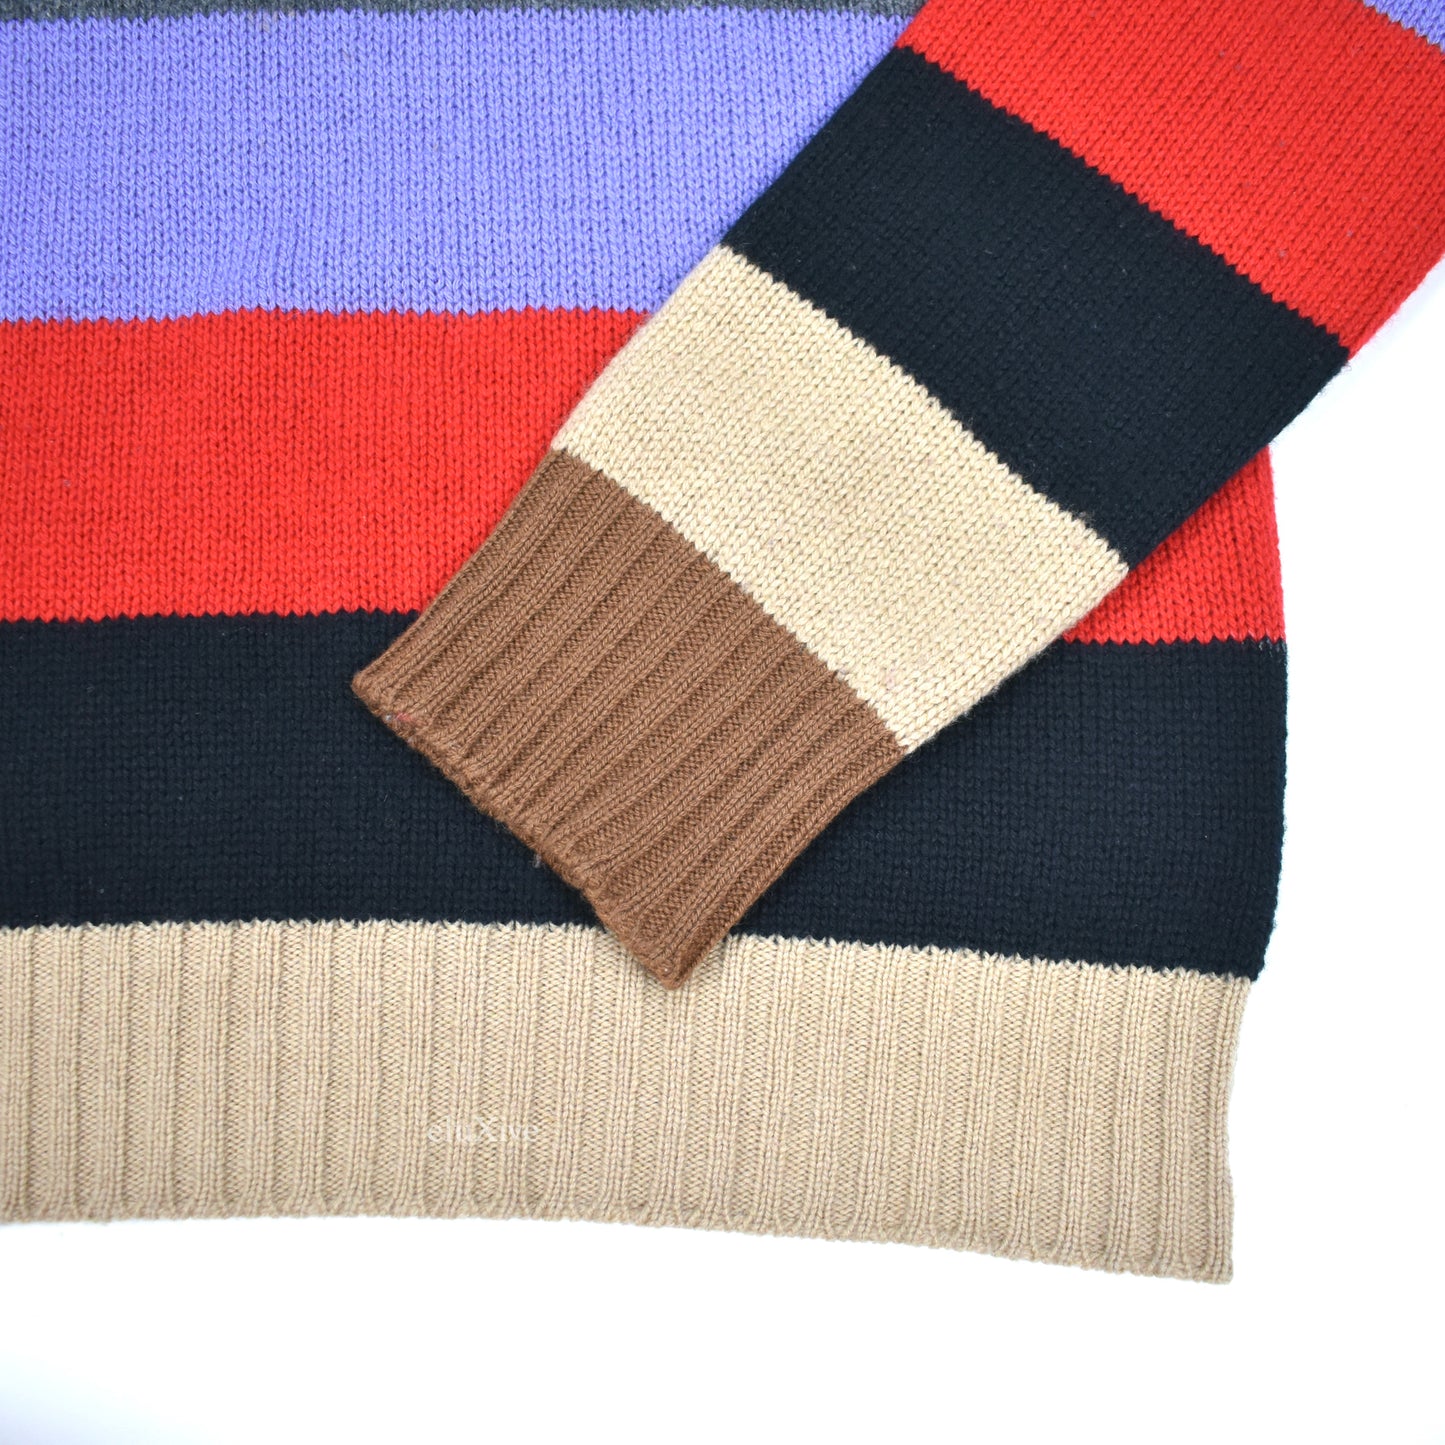 Prada - Colorful Striped Wool Crewneck Sweater